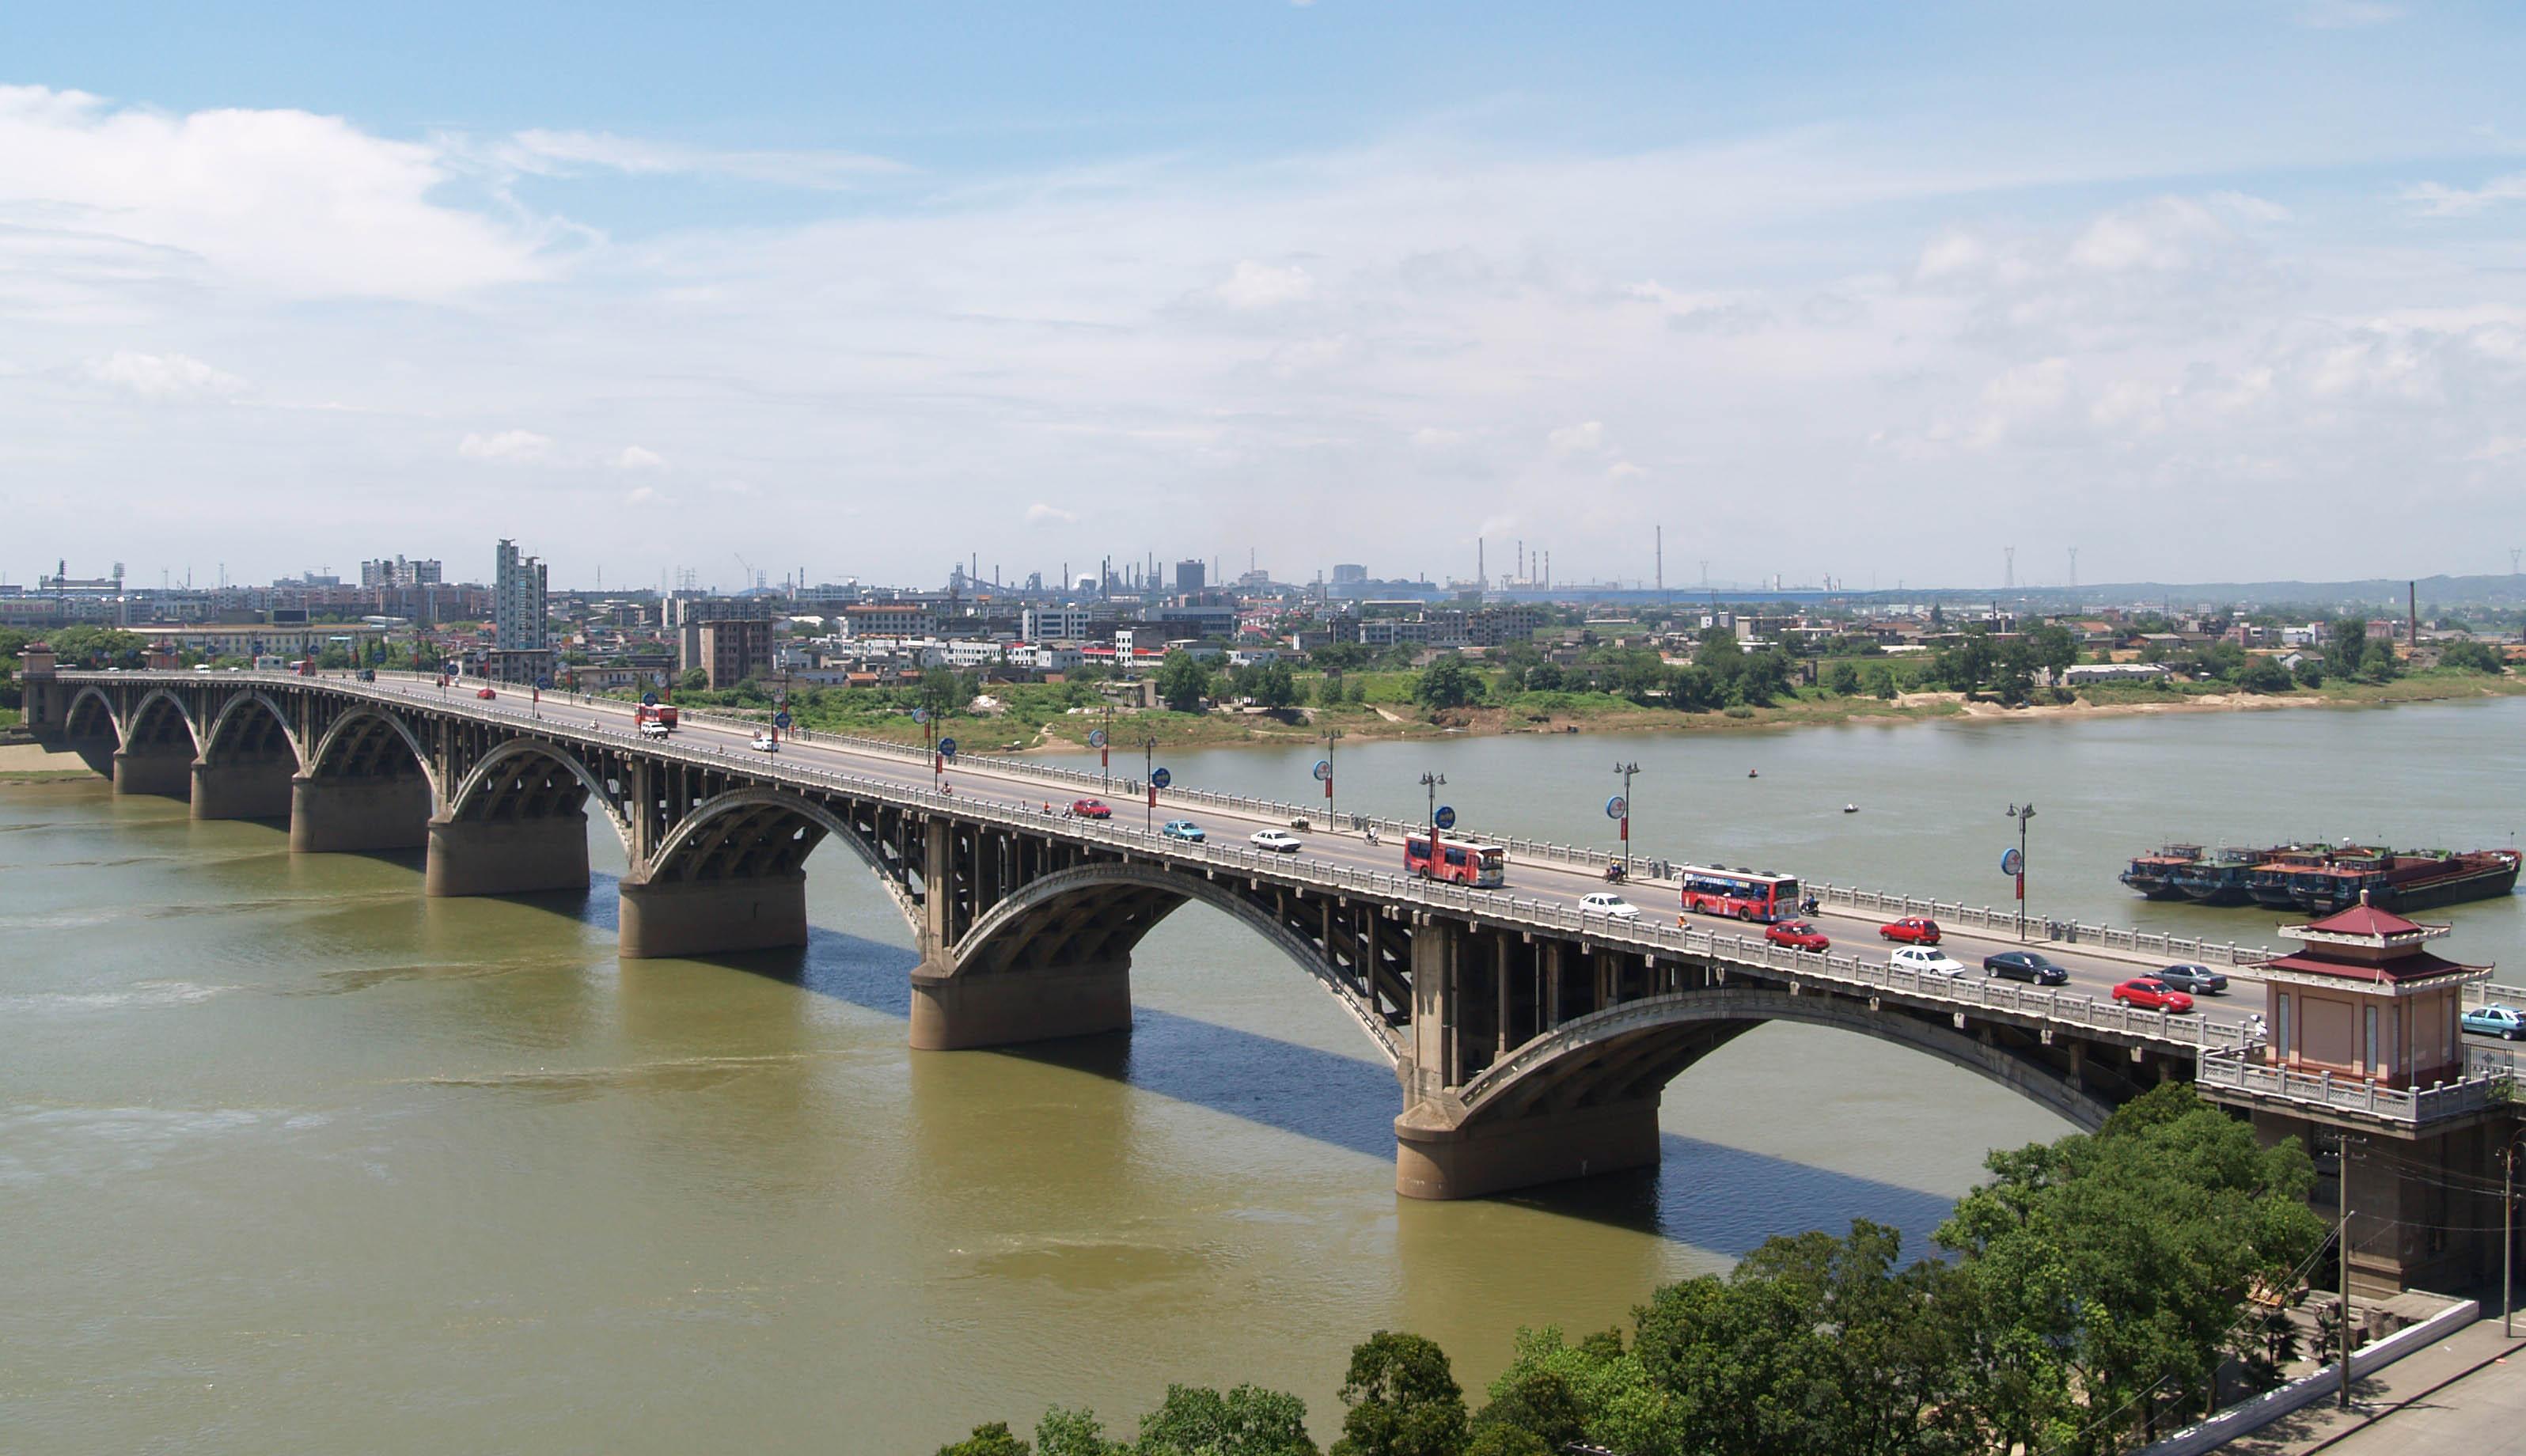 公司承建的湘潭一大橋工程被譽為“千里湘江第一橋”，比長沙市的第一座湘江大橋還早10年，一直以來是湘潭市標志性建筑